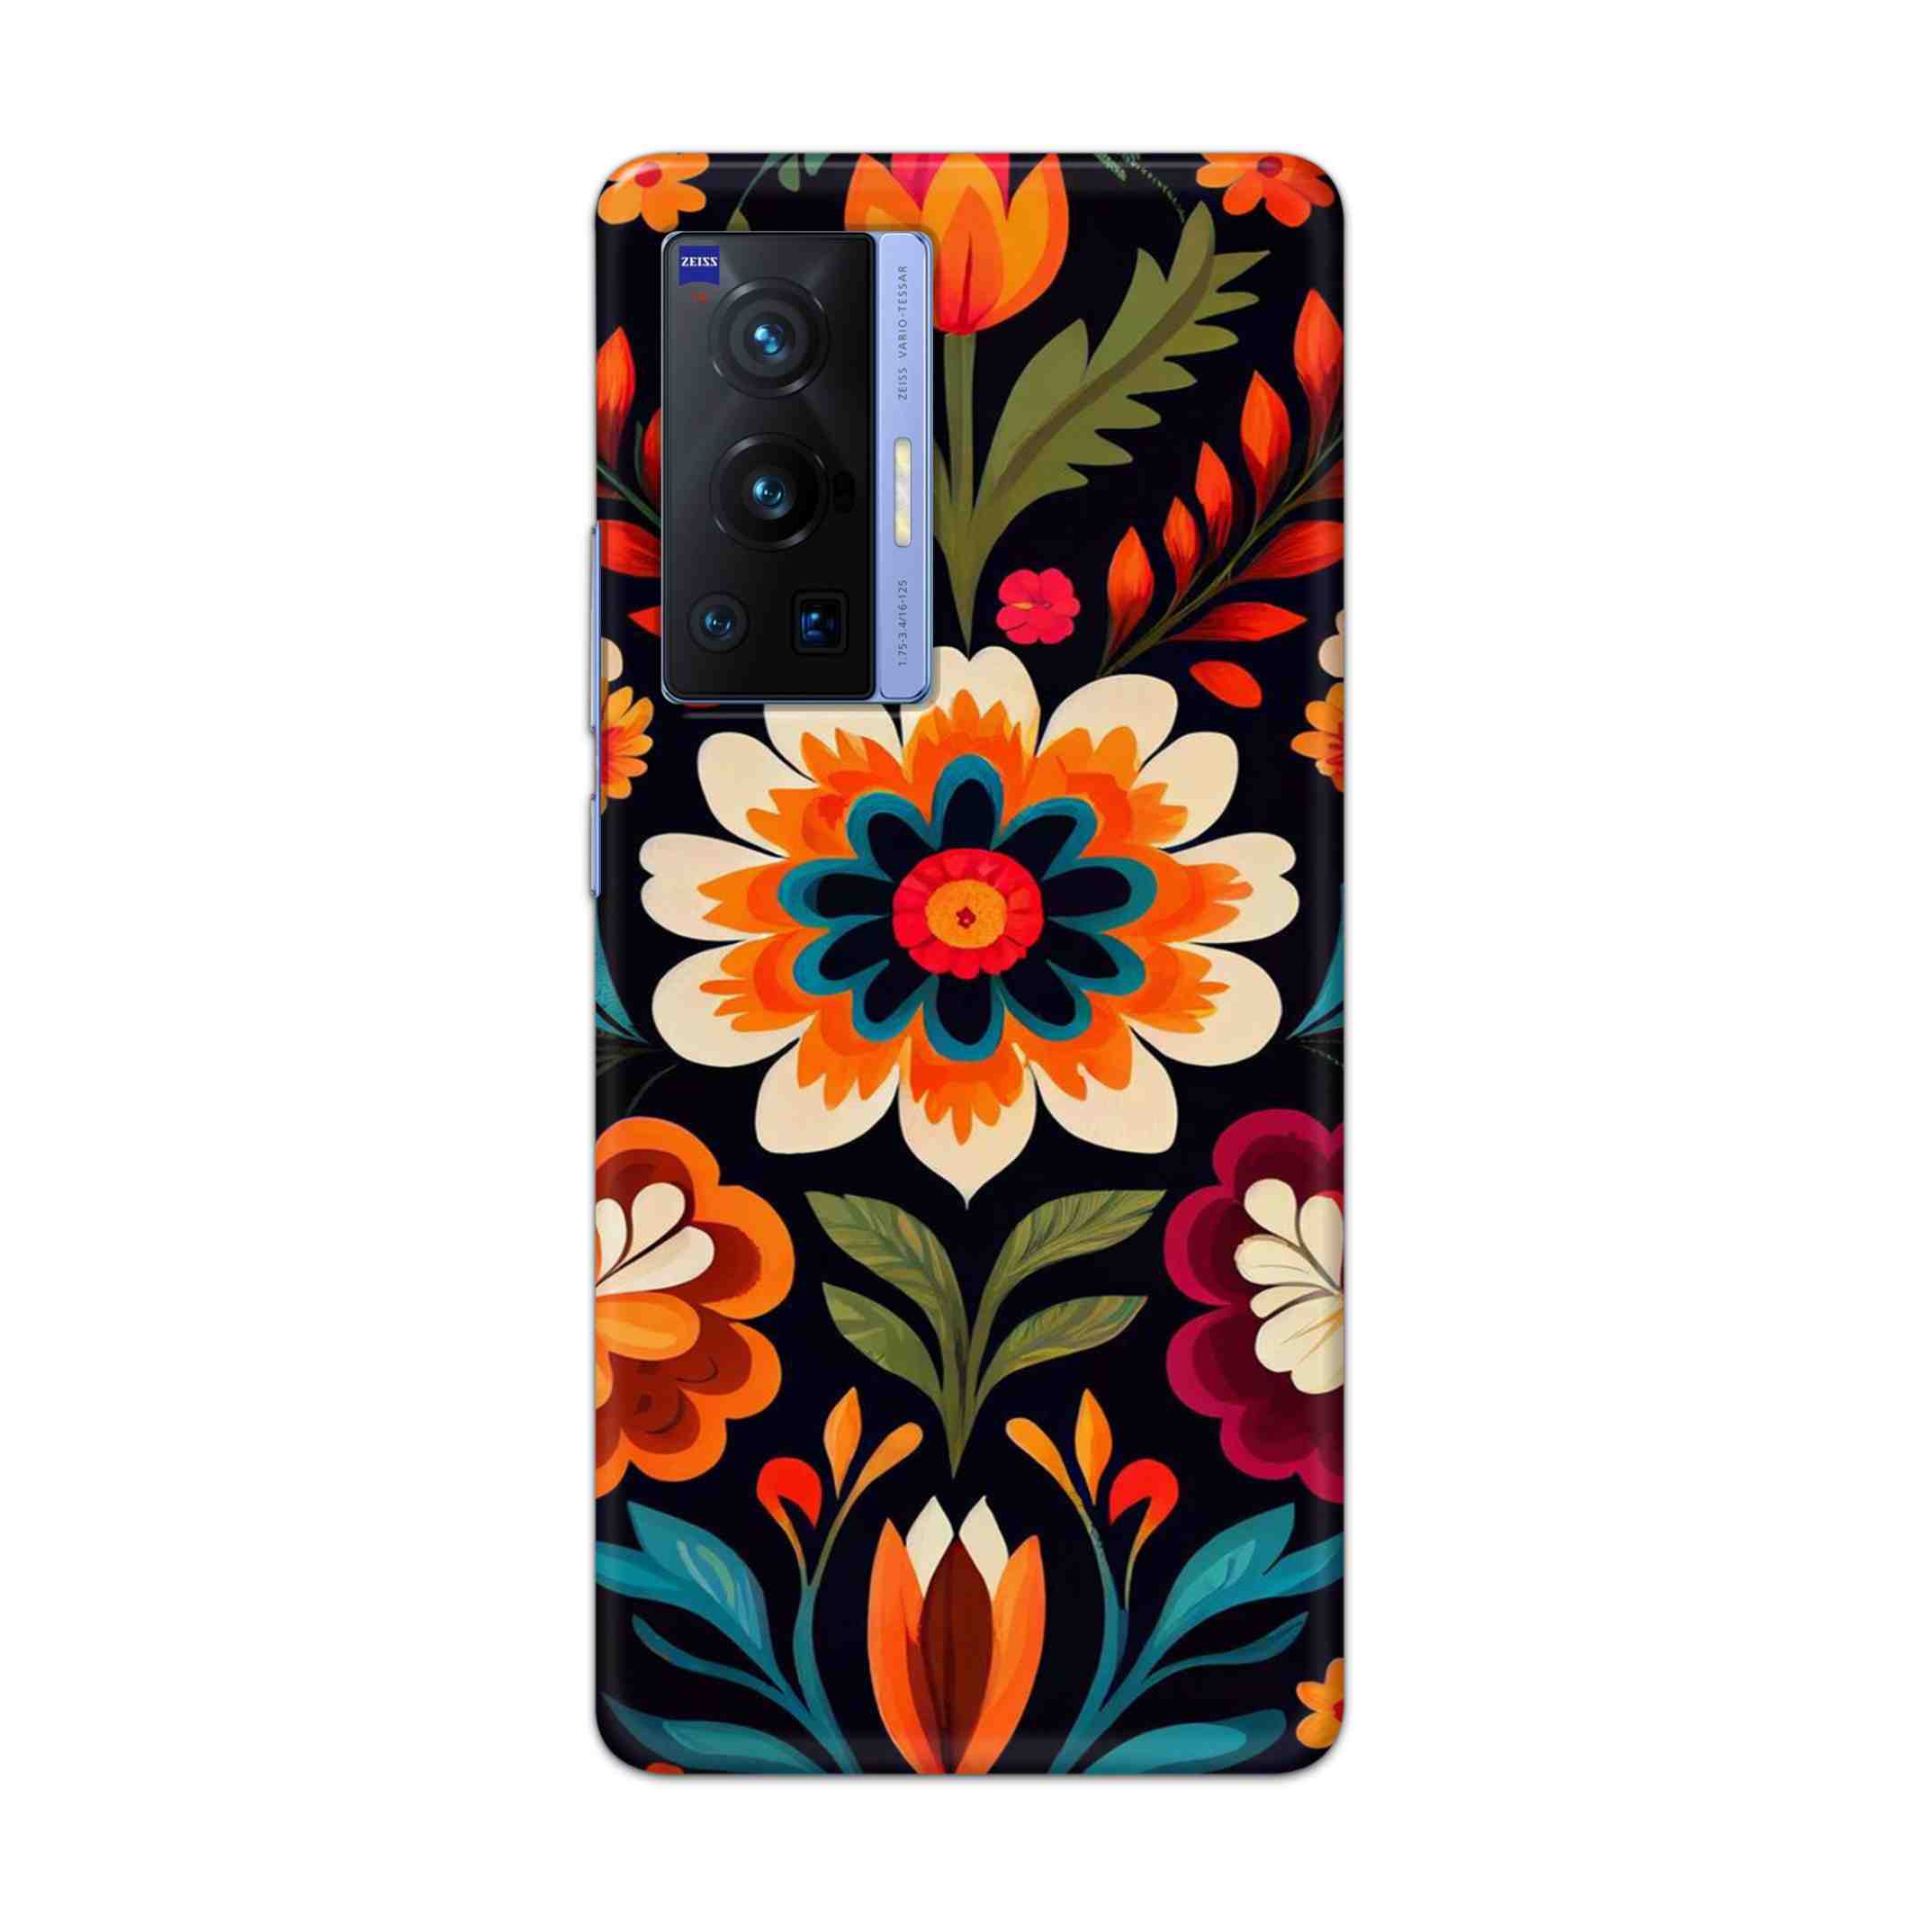 Buy Flower Hard Back Mobile Phone Case Cover For Vivo X70 Pro Online